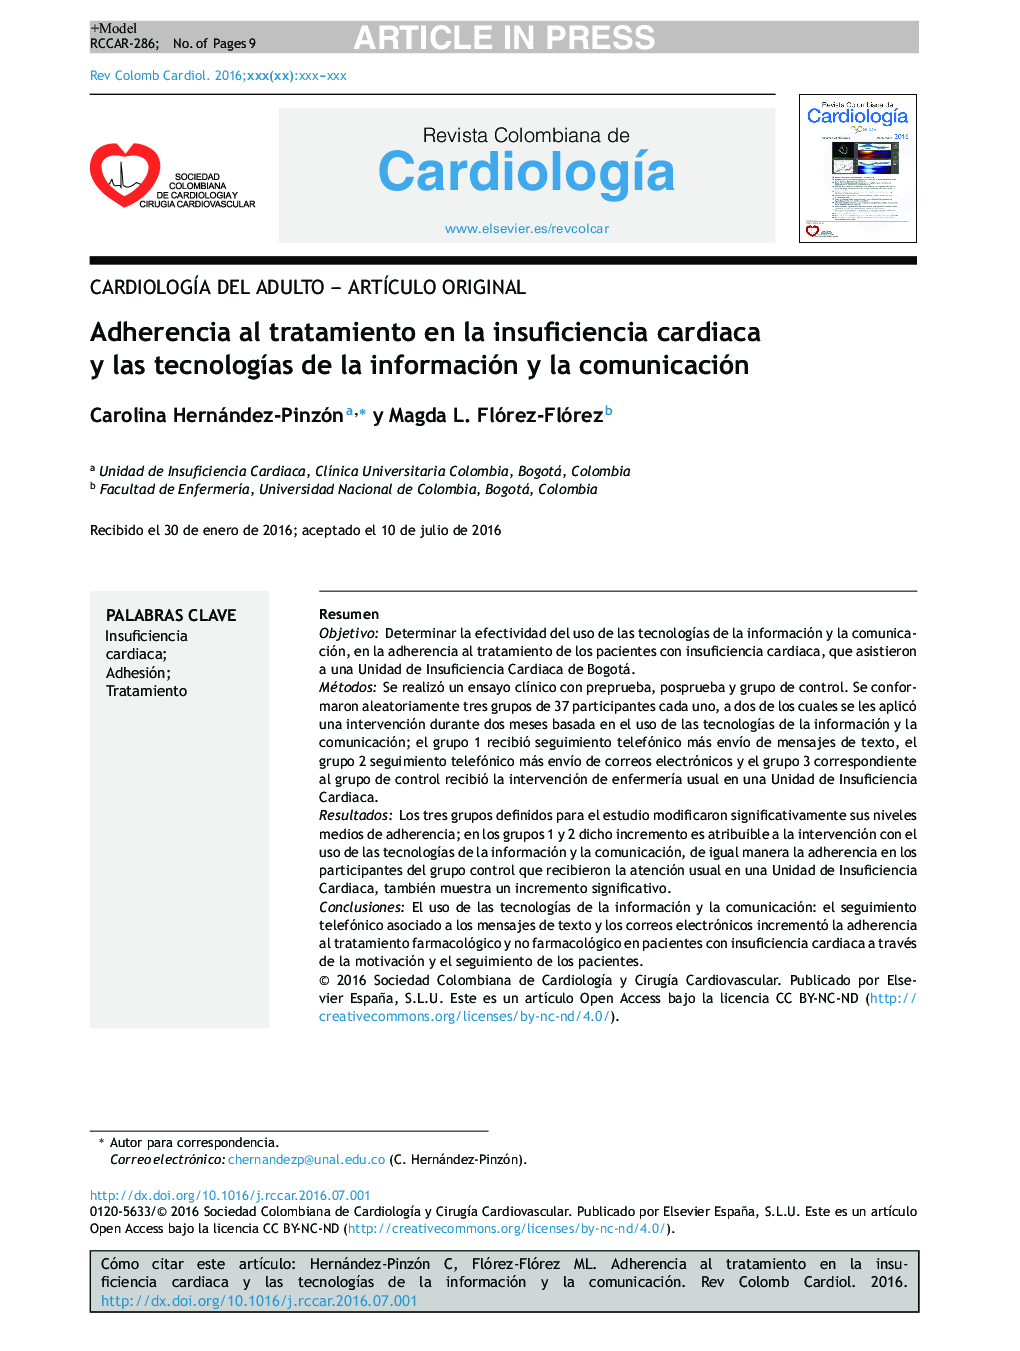 Adherencia al tratamiento en la insuficiencia cardiaca y las tecnologÃ­as de la información y la comunicación